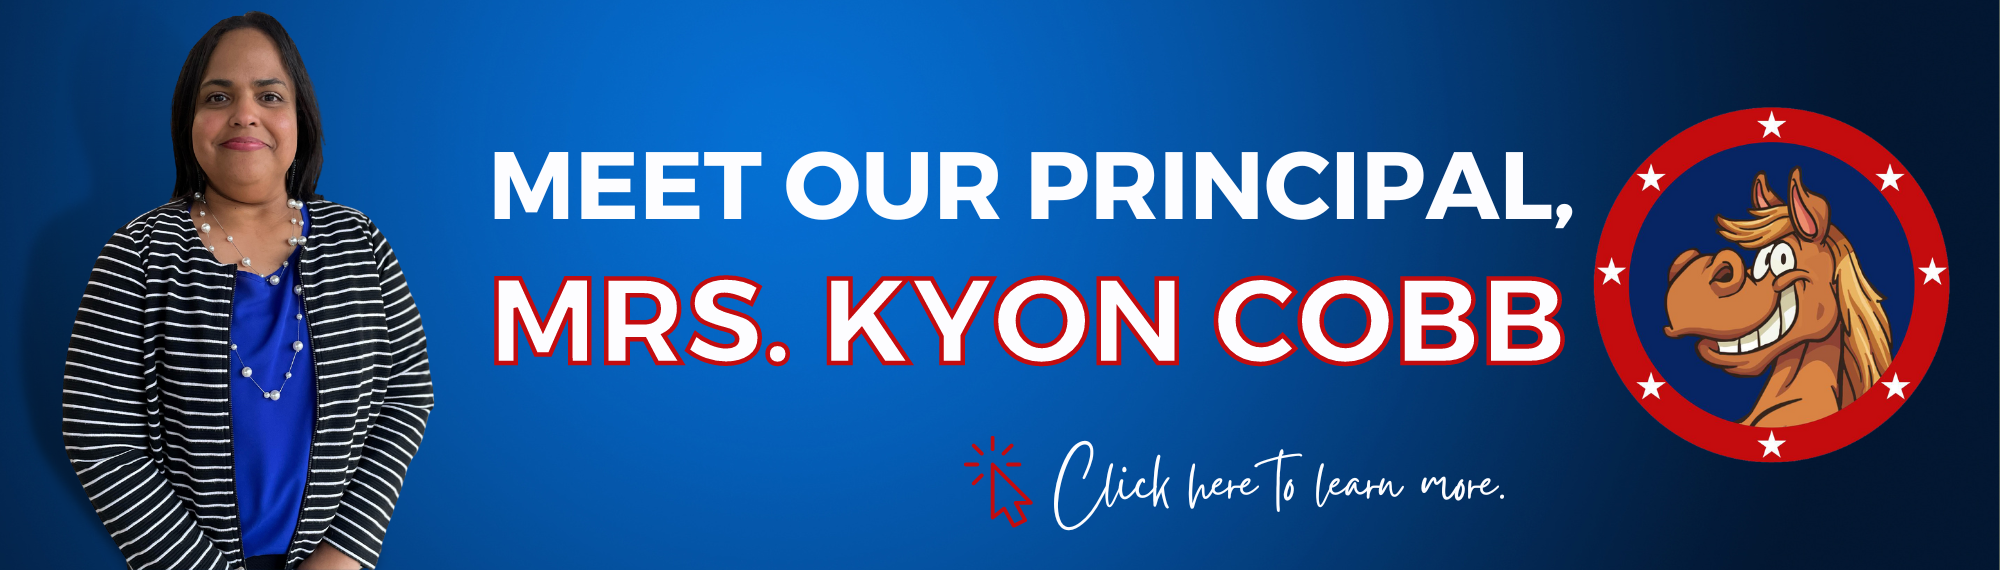 Meet Our Principal, Mrs. Kyon Cobb